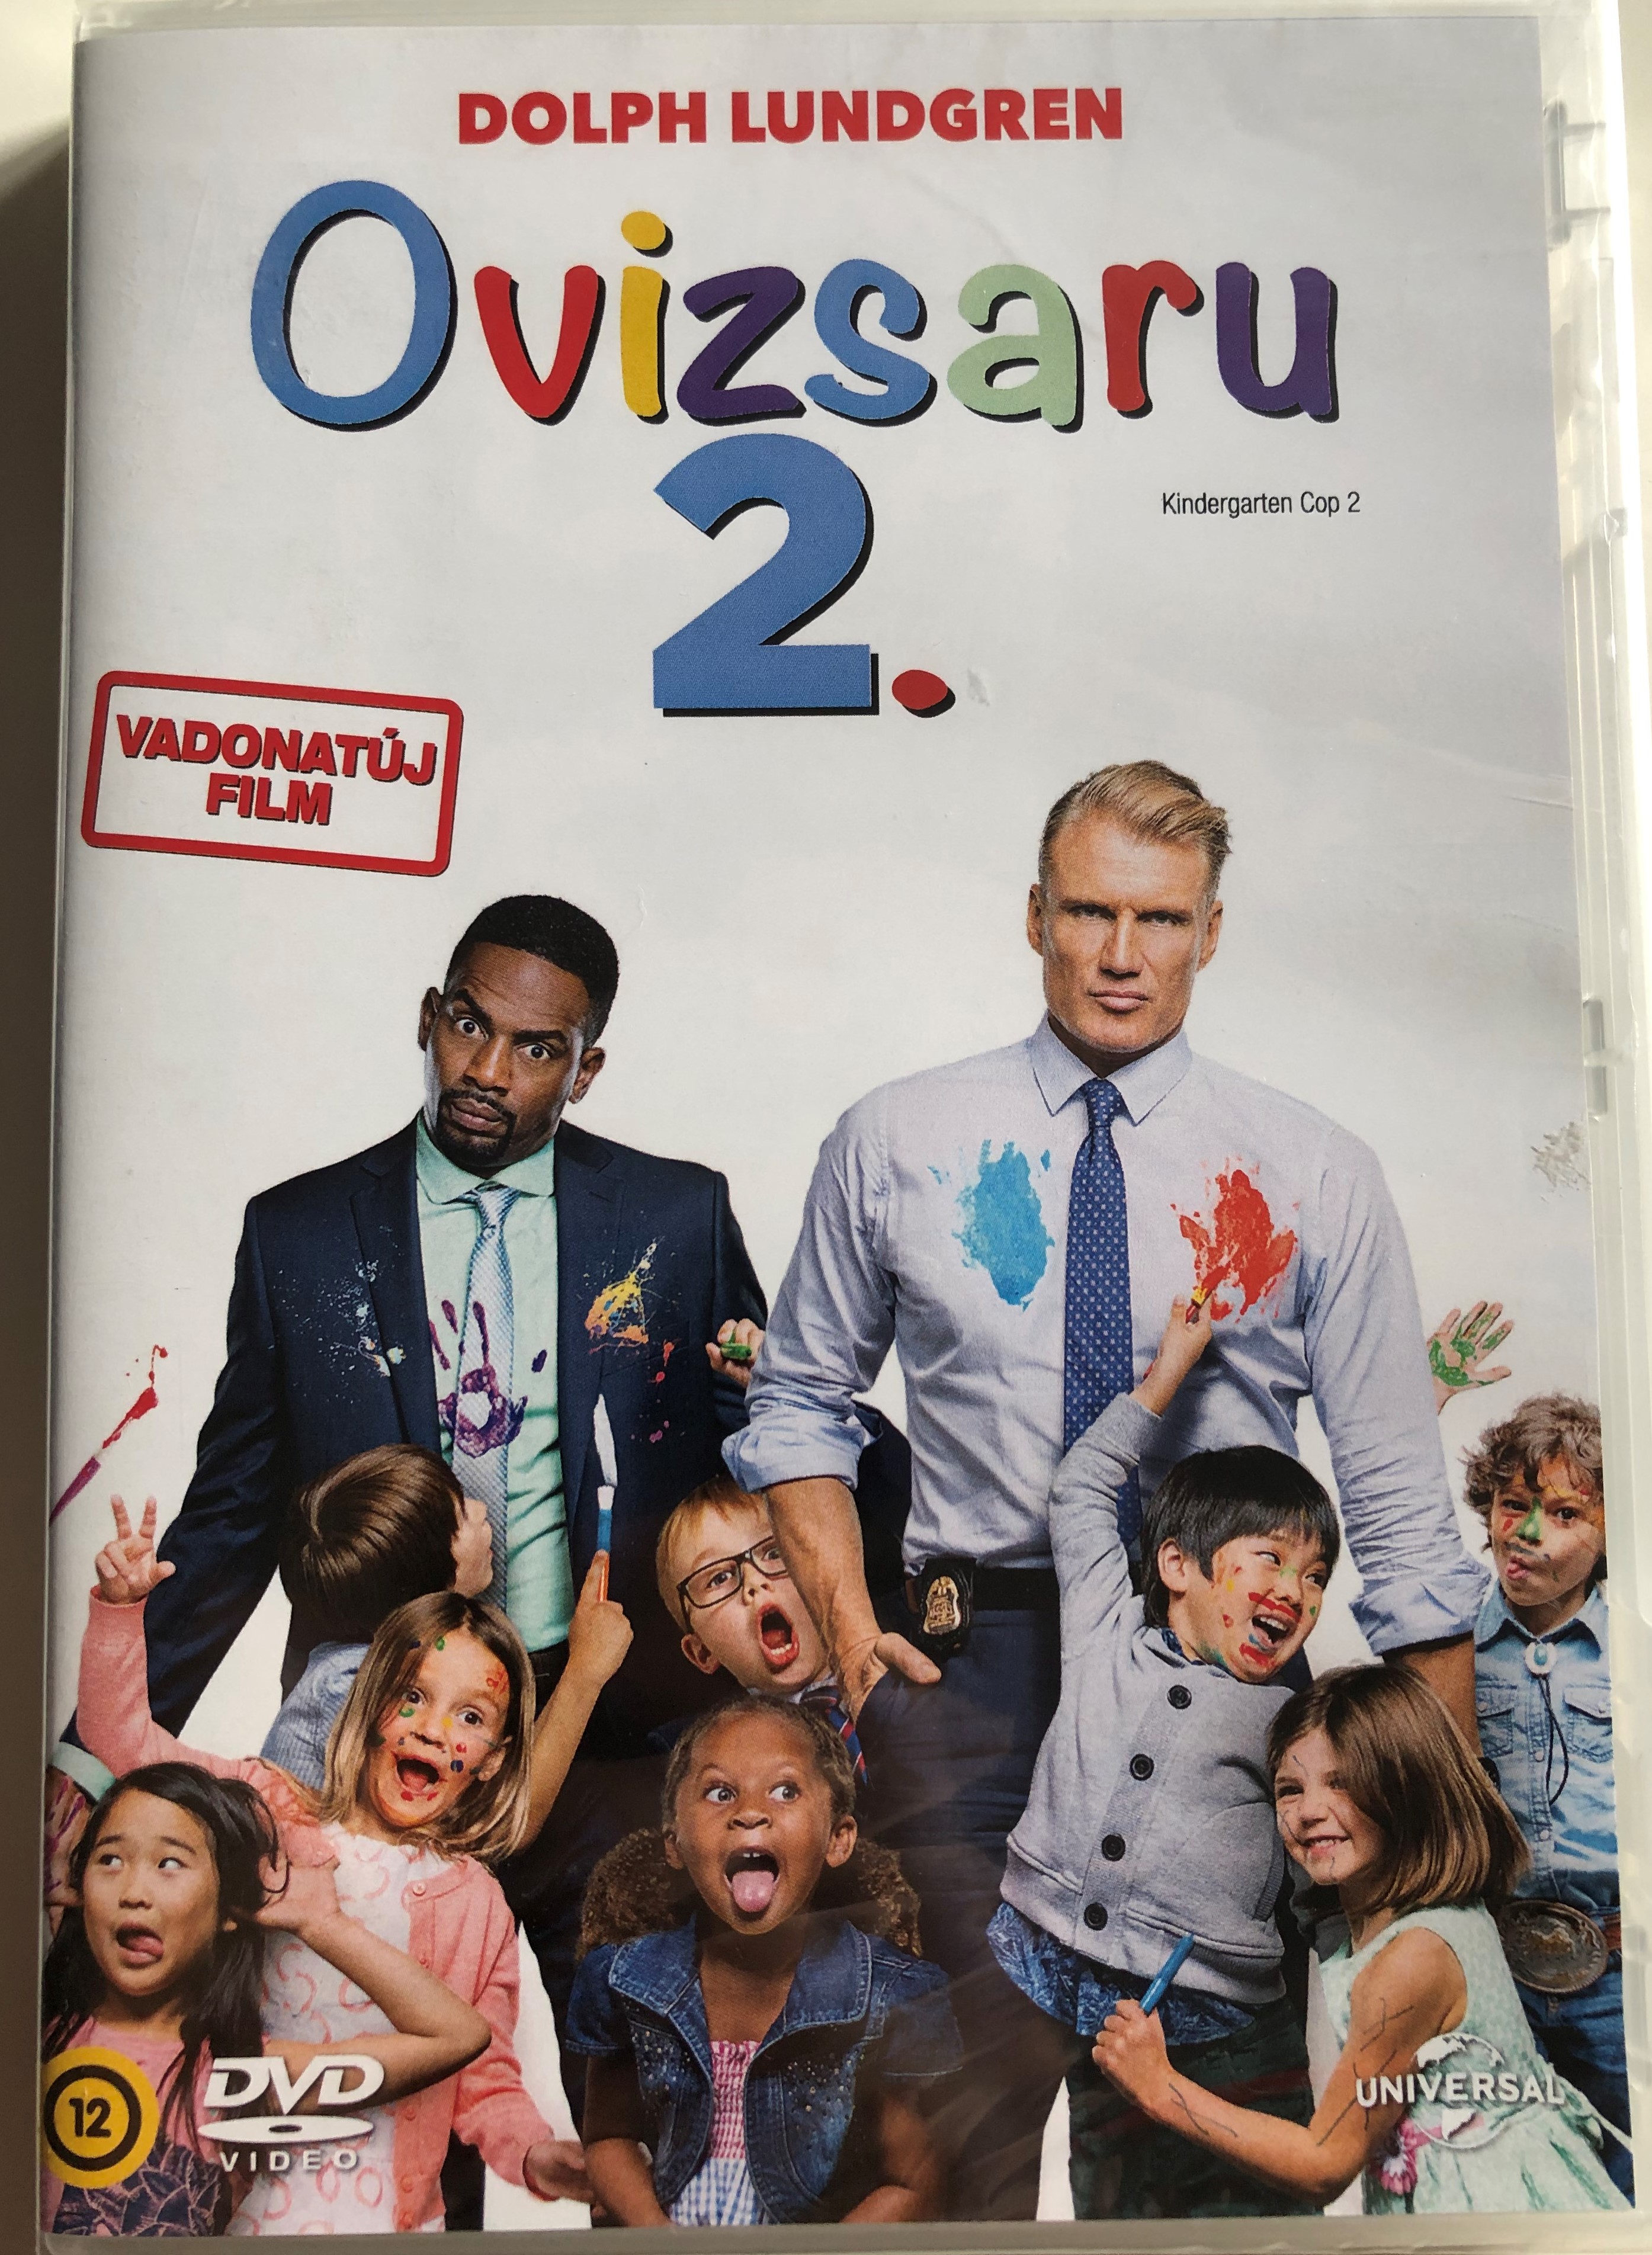 Kindergarten Cop 2 DVD 2016 Ovizsaru 2  1.JPG